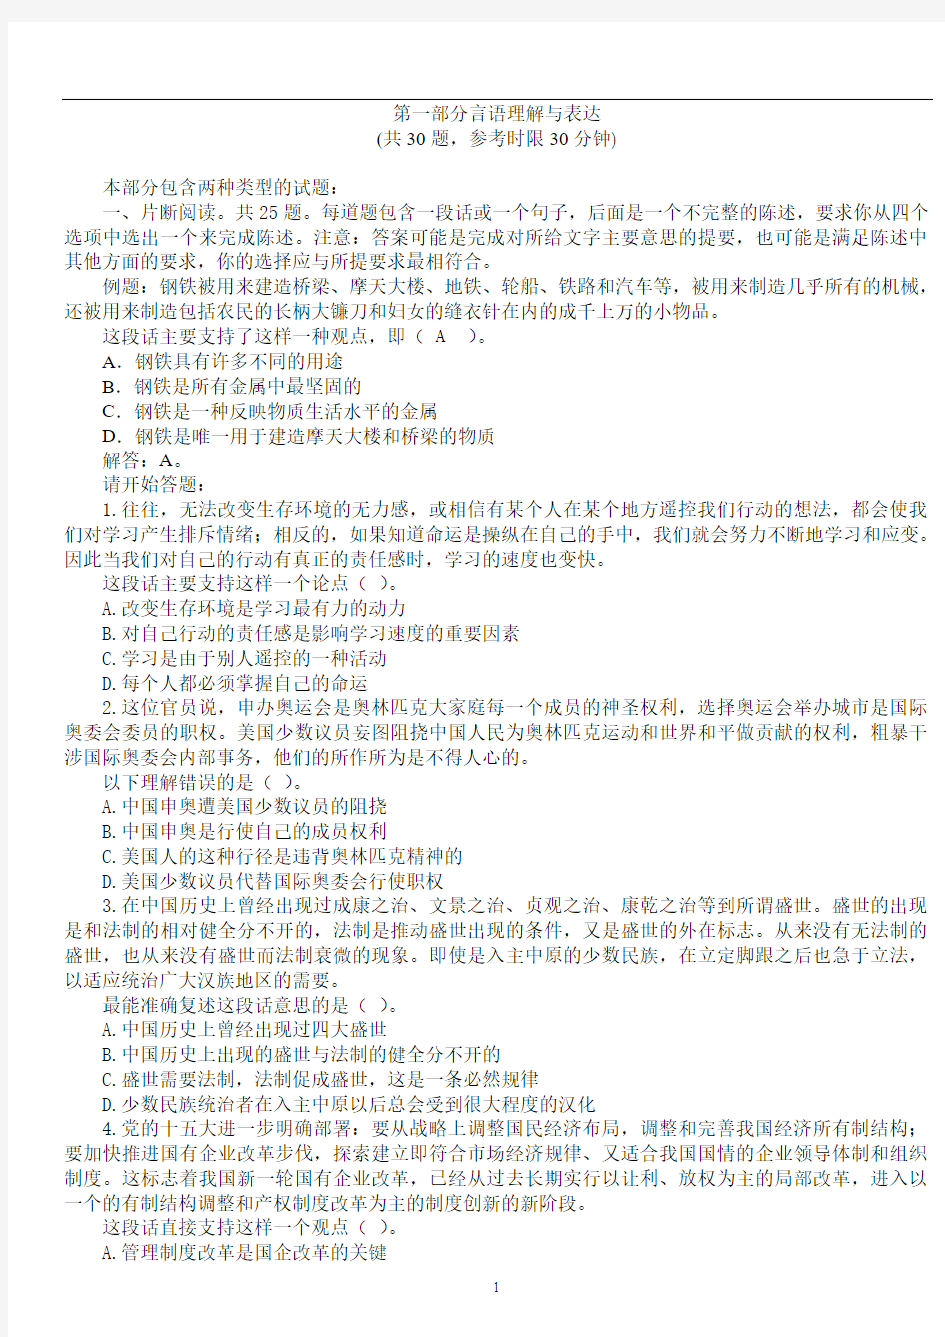 2011中国农业银行招聘考试笔试试题